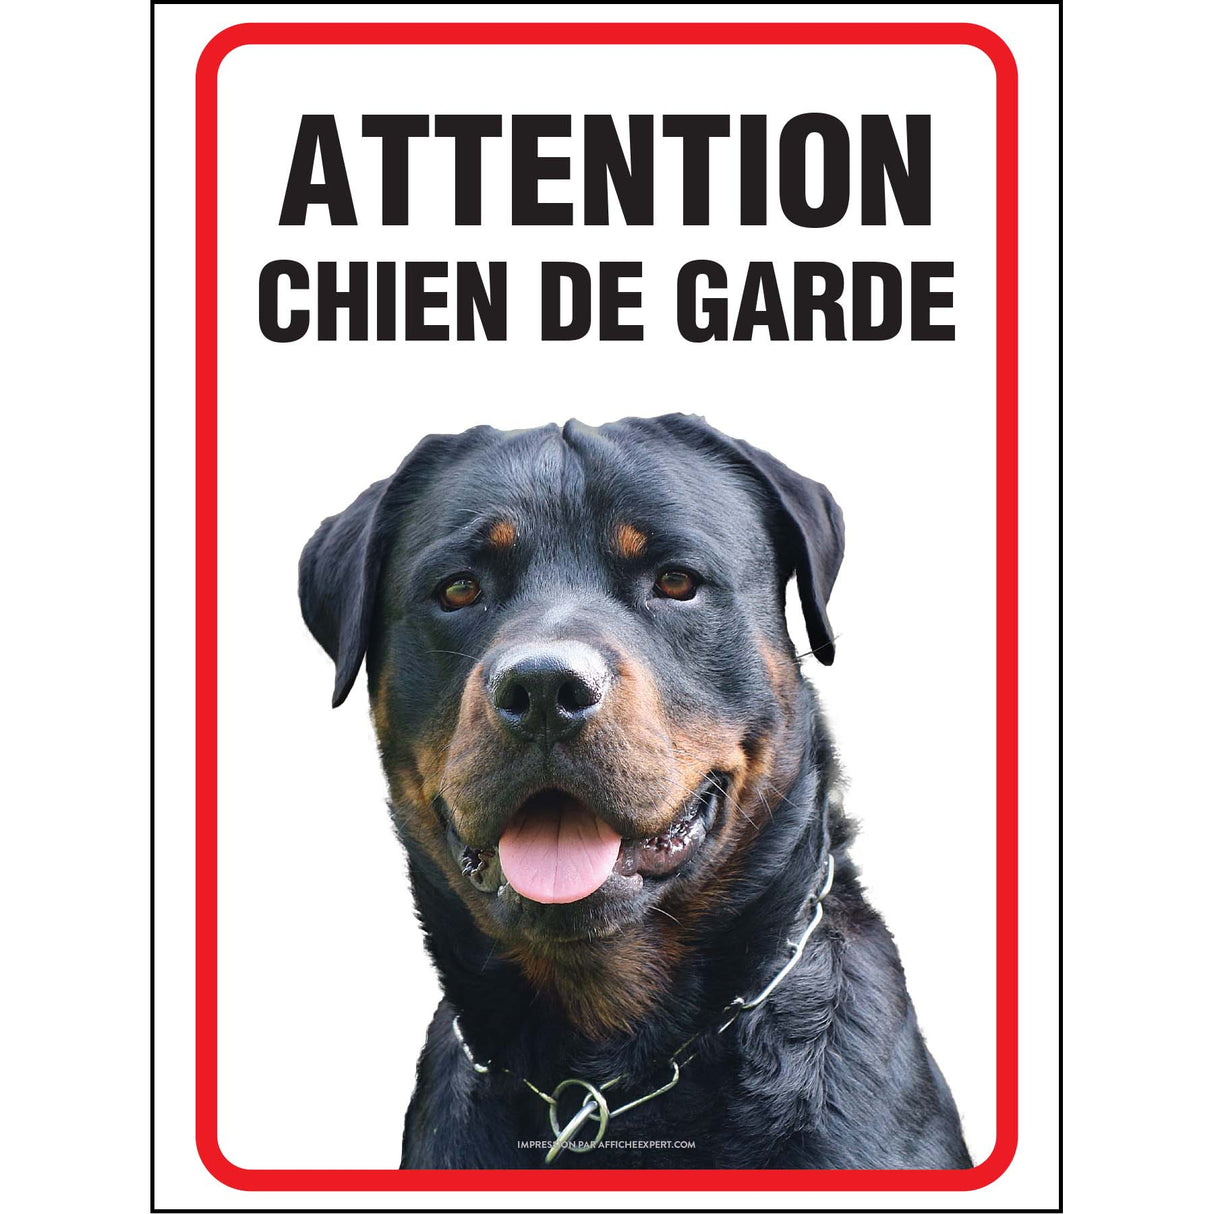 Attention chien de garde - Rottweiler